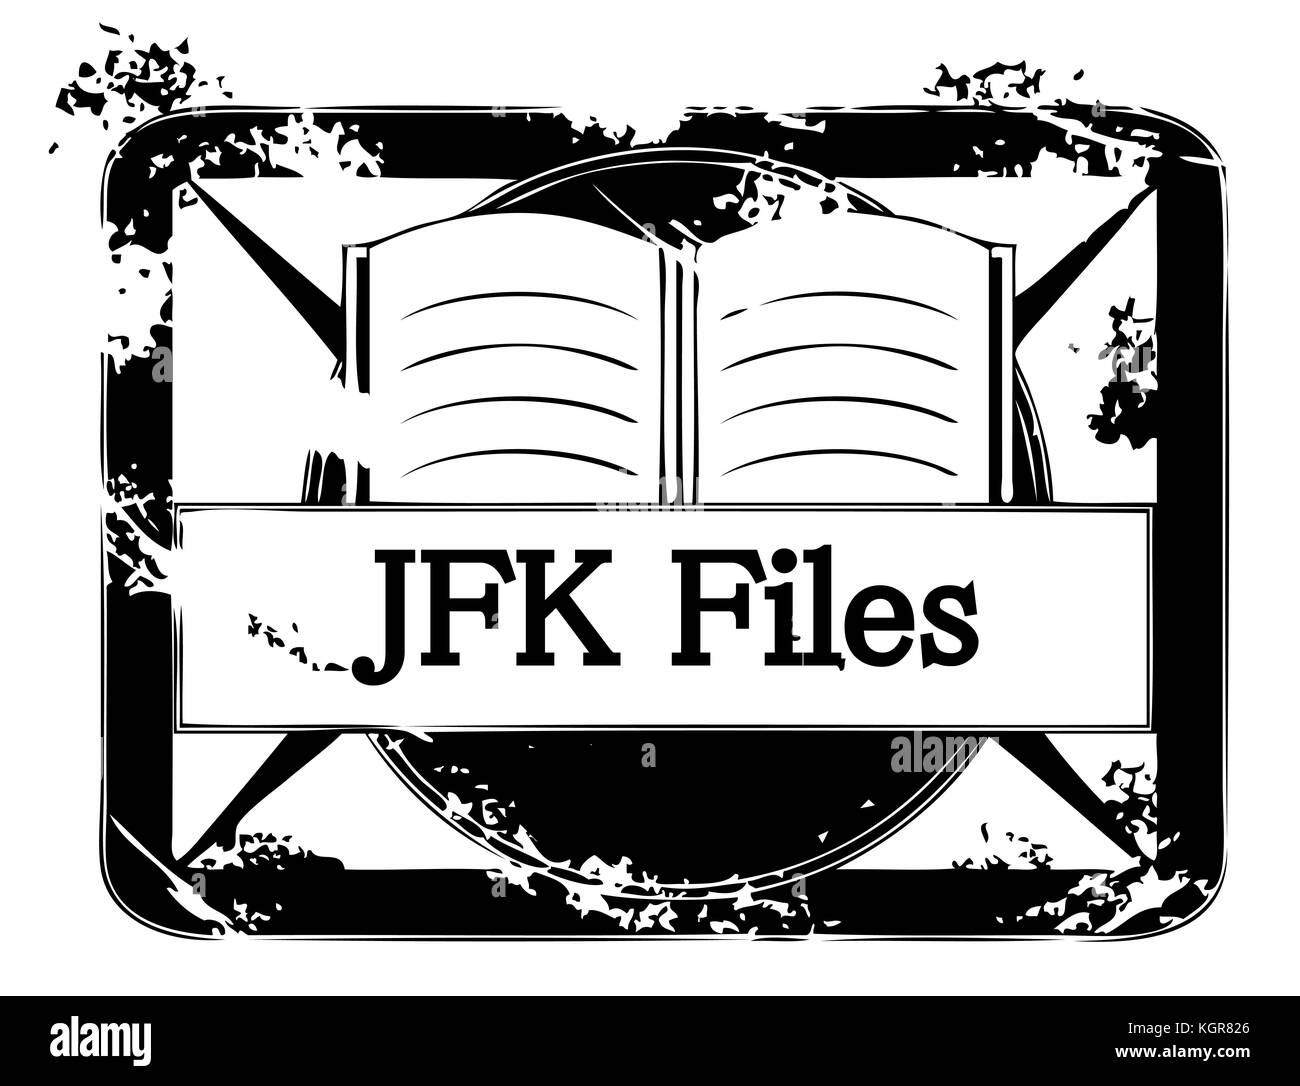 Illustration of secret JFK files isolated on white background Stock Photo